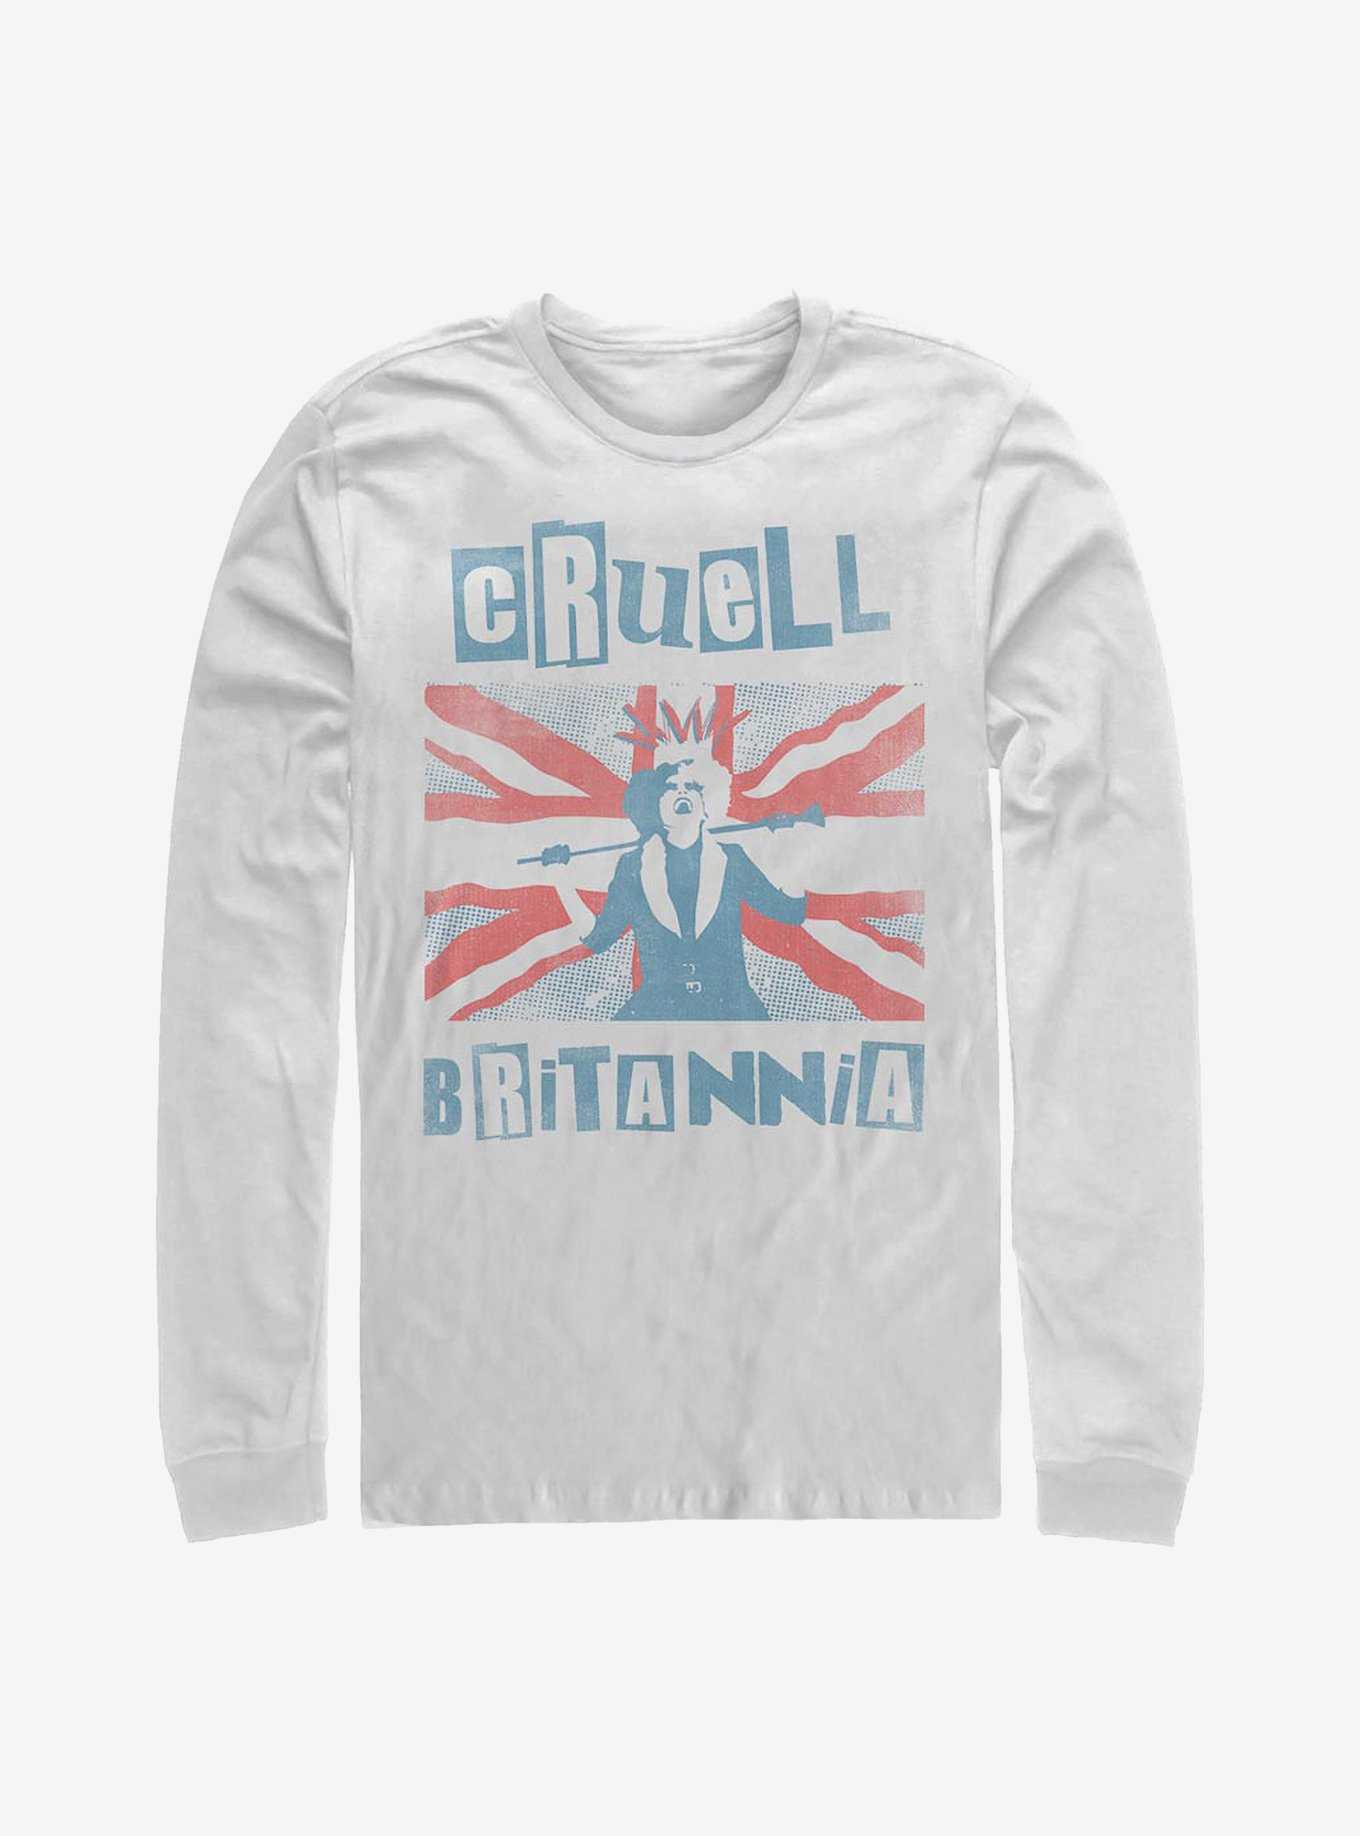 Disney Cruella Cruell Britannia Long-Sleeve T-Shirt, , hi-res